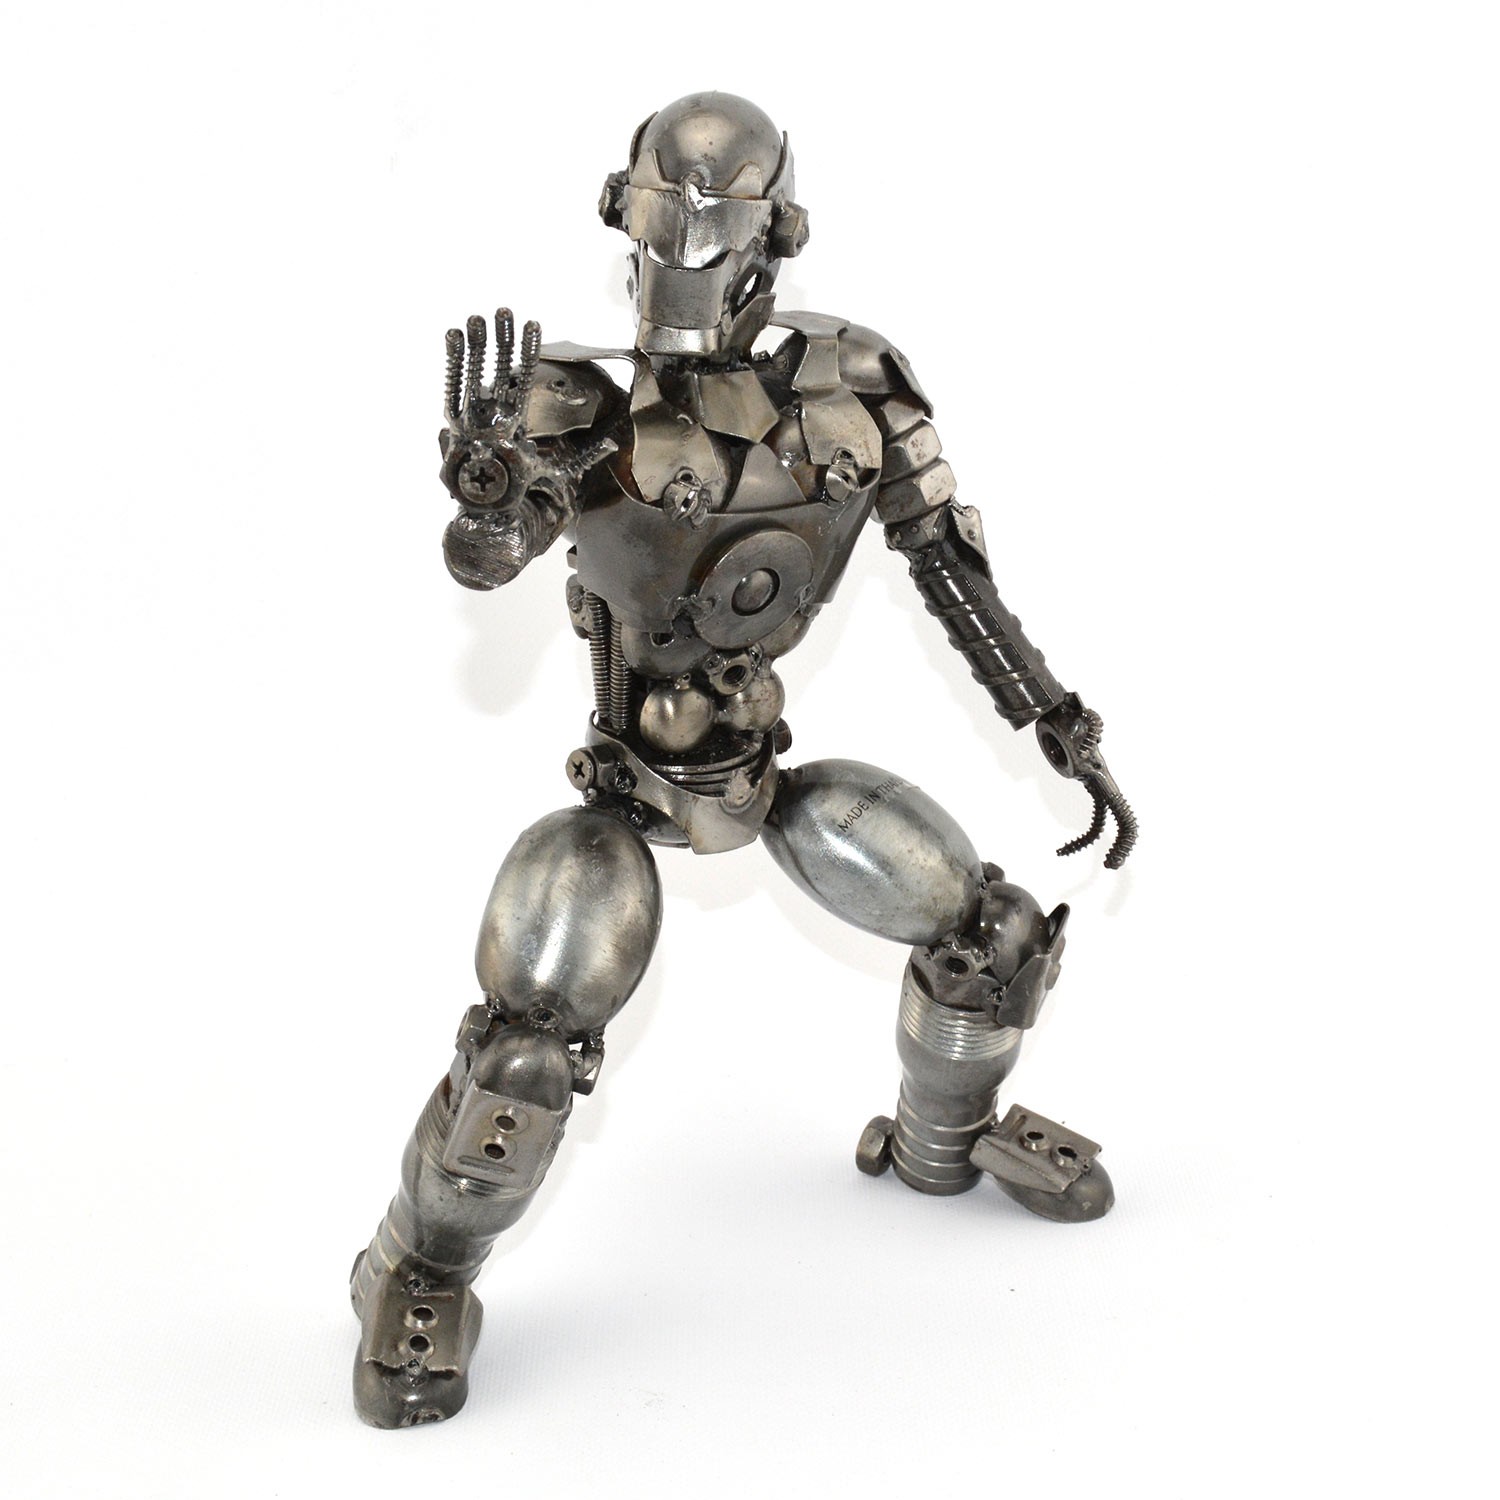 Robot Standing Metal Sculpture / Model   Look Alike Iron Man